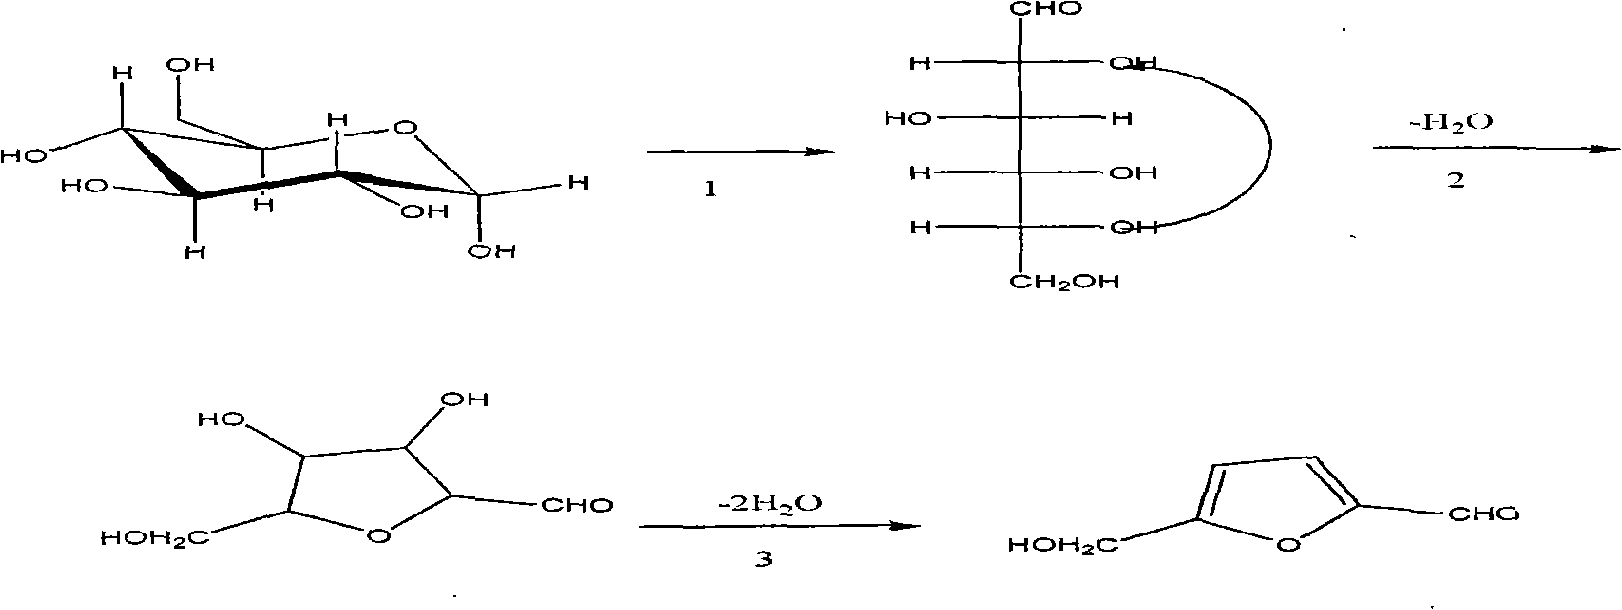 Method for synthesizing 5-hydroxymethyl-furfural